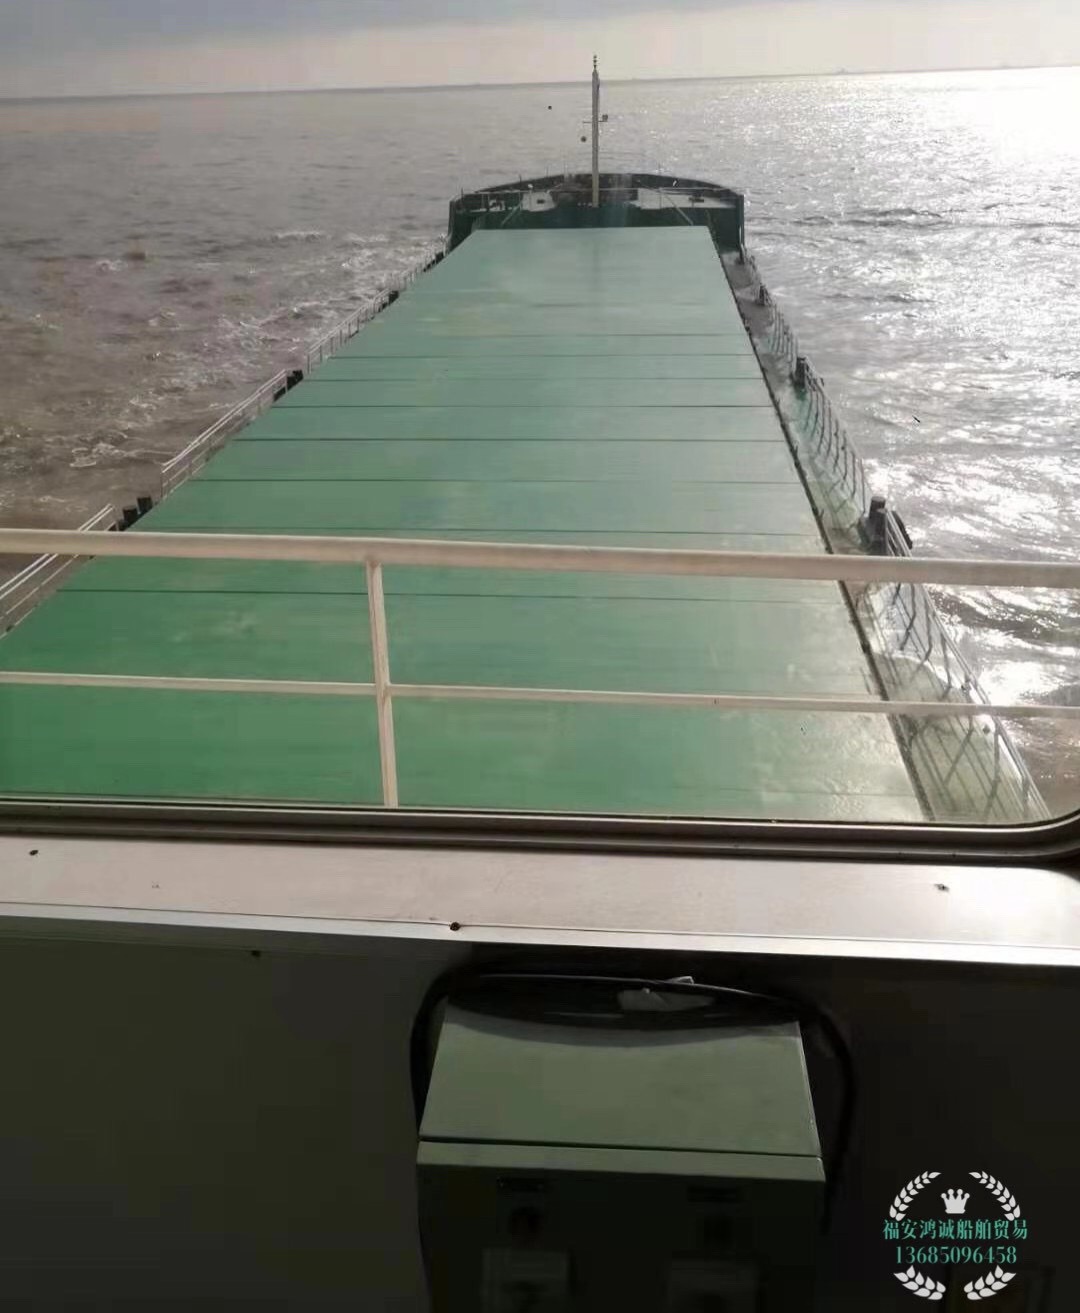 出售4370吨散货船(通舱双壳结构)2016年6月江苏造